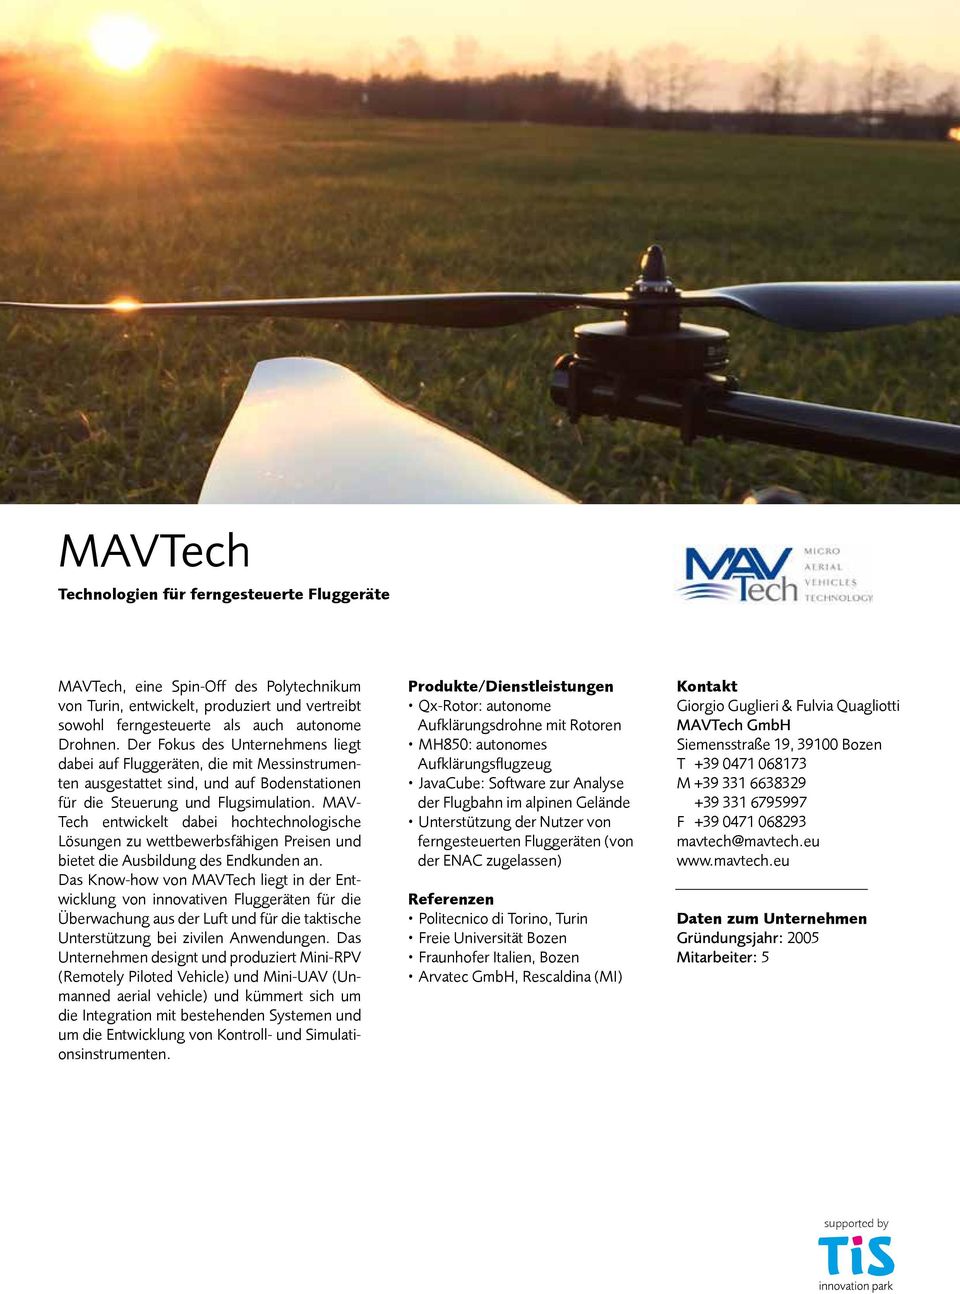 MAV- Tech entwickelt dabei hochtechnologische Lösungen zu wettbewerbsfähigen Preisen und bietet die Ausbildung des Endkunden an.